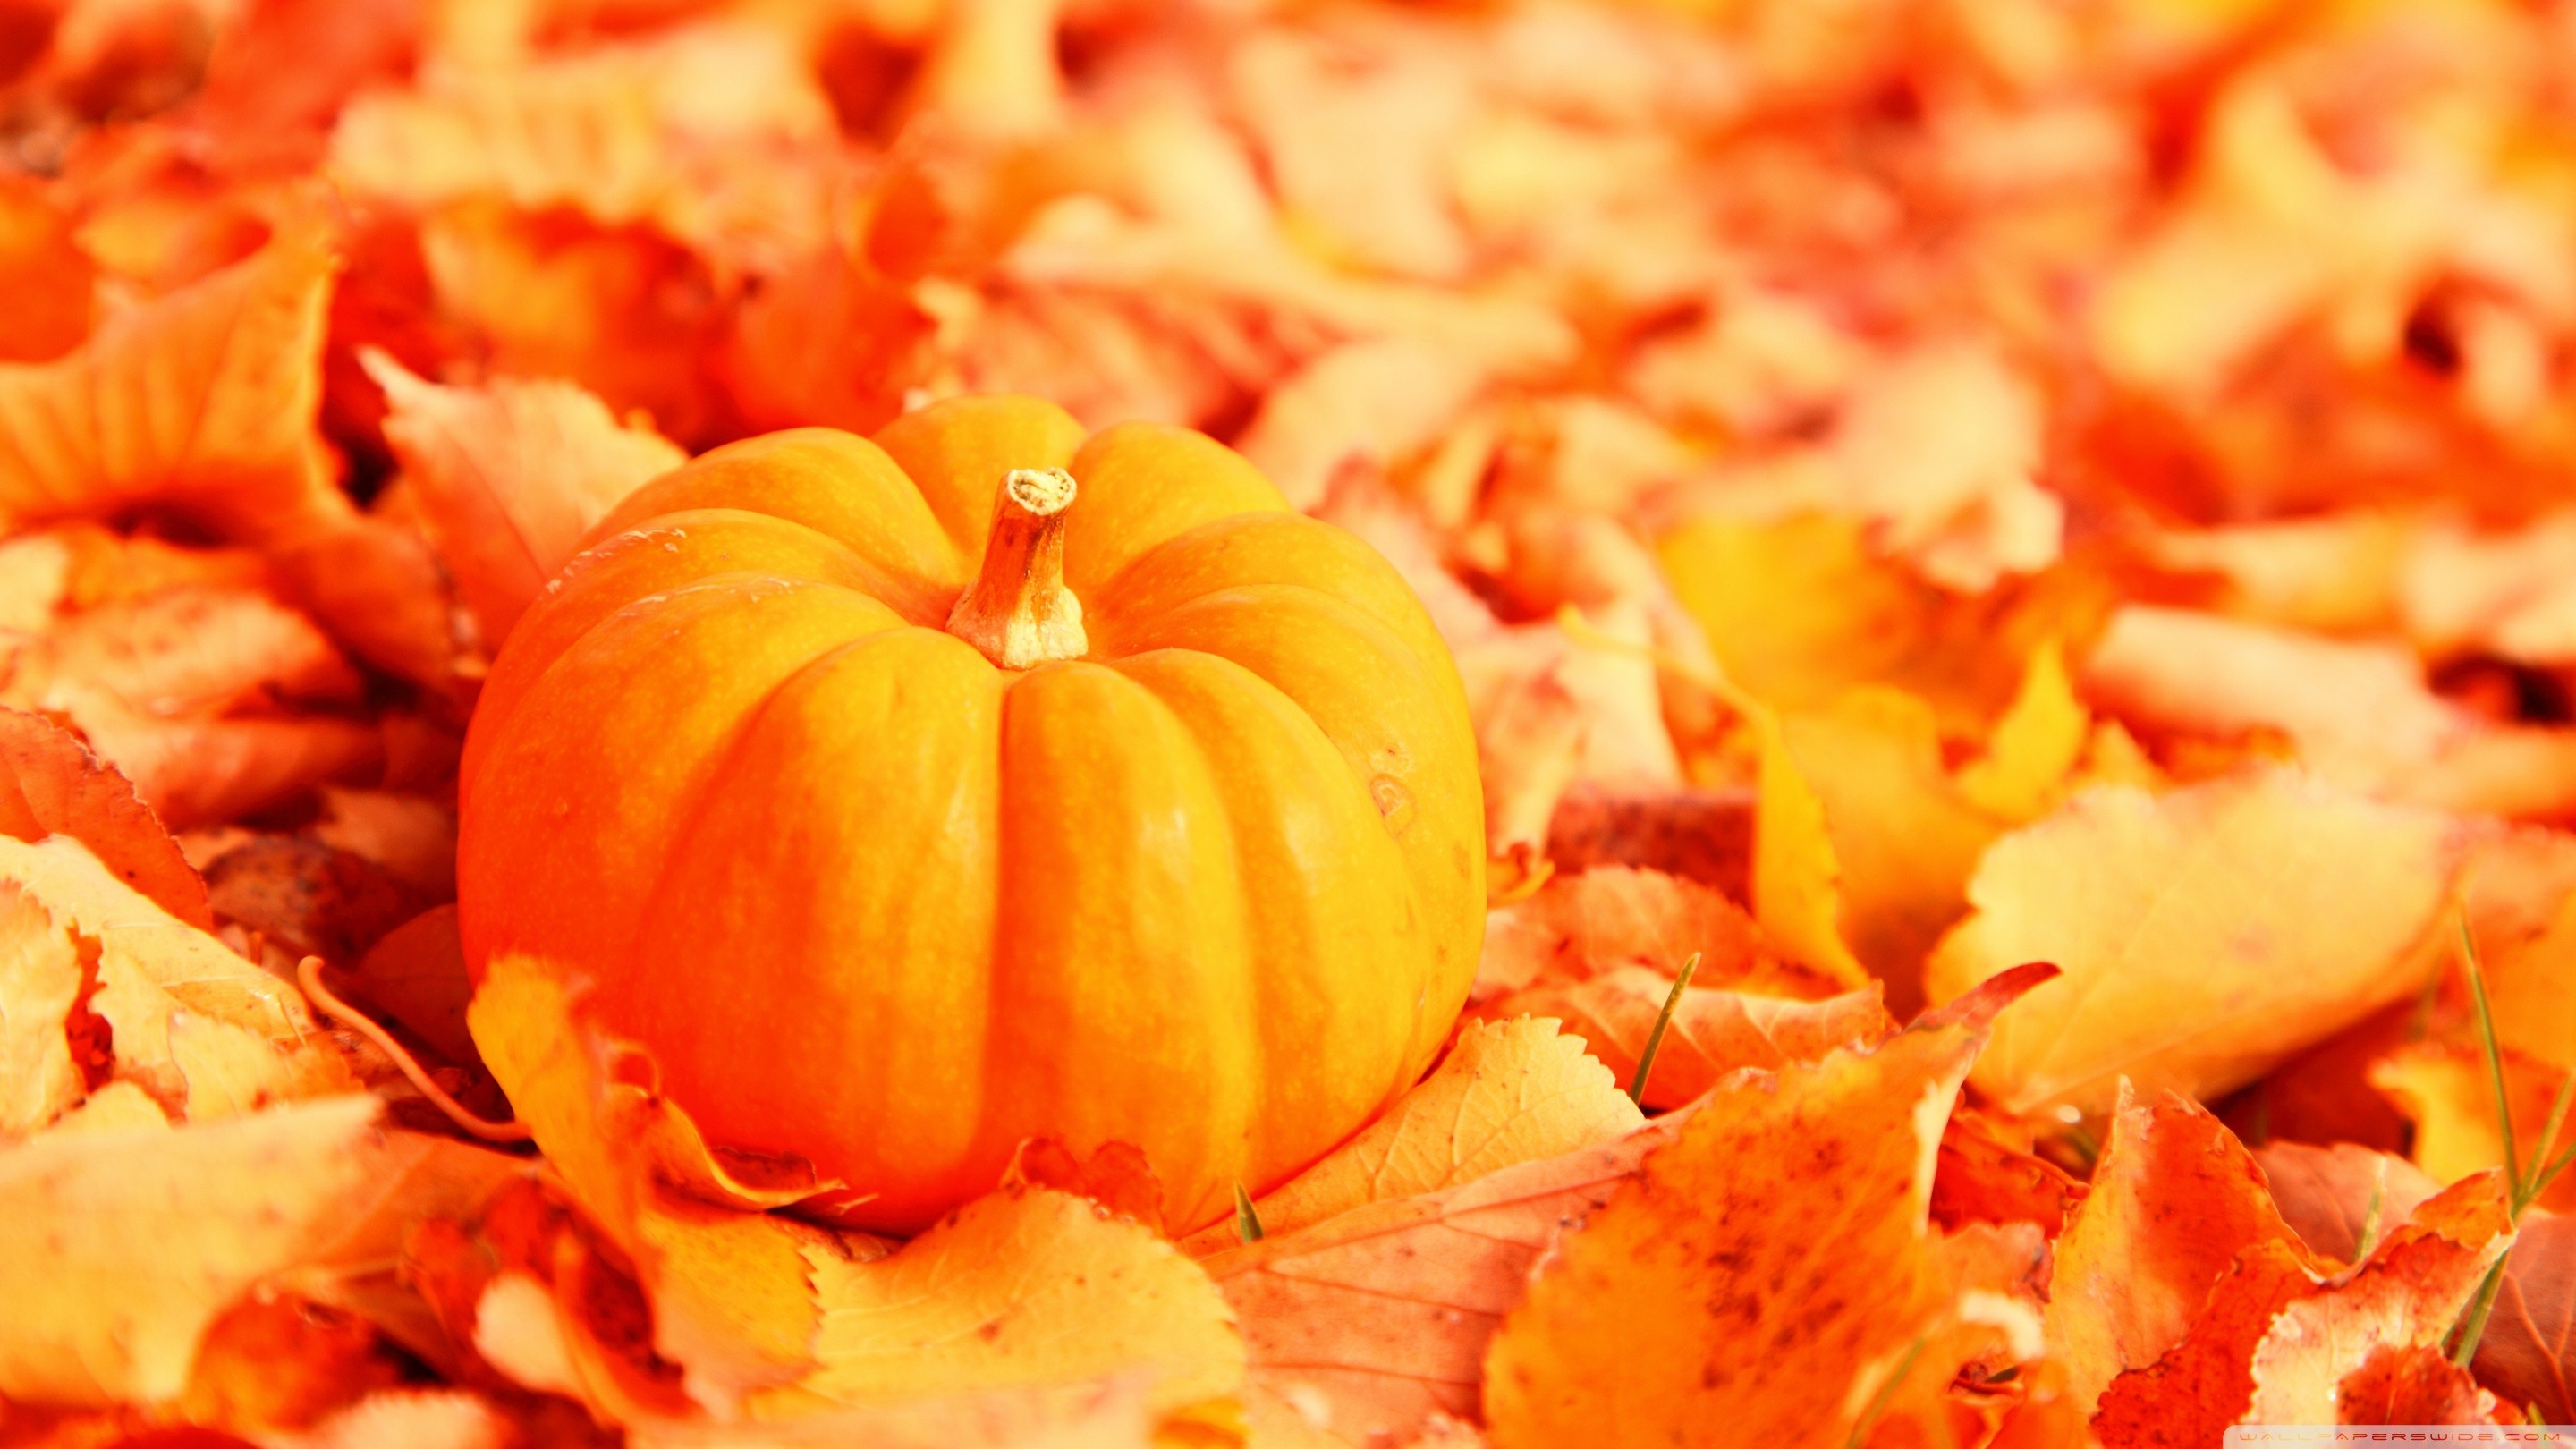 Pumpkin And Autumn Leaves Hd Desktop Wallpaper - Fall Leaves And Pumpkin - HD Wallpaper 